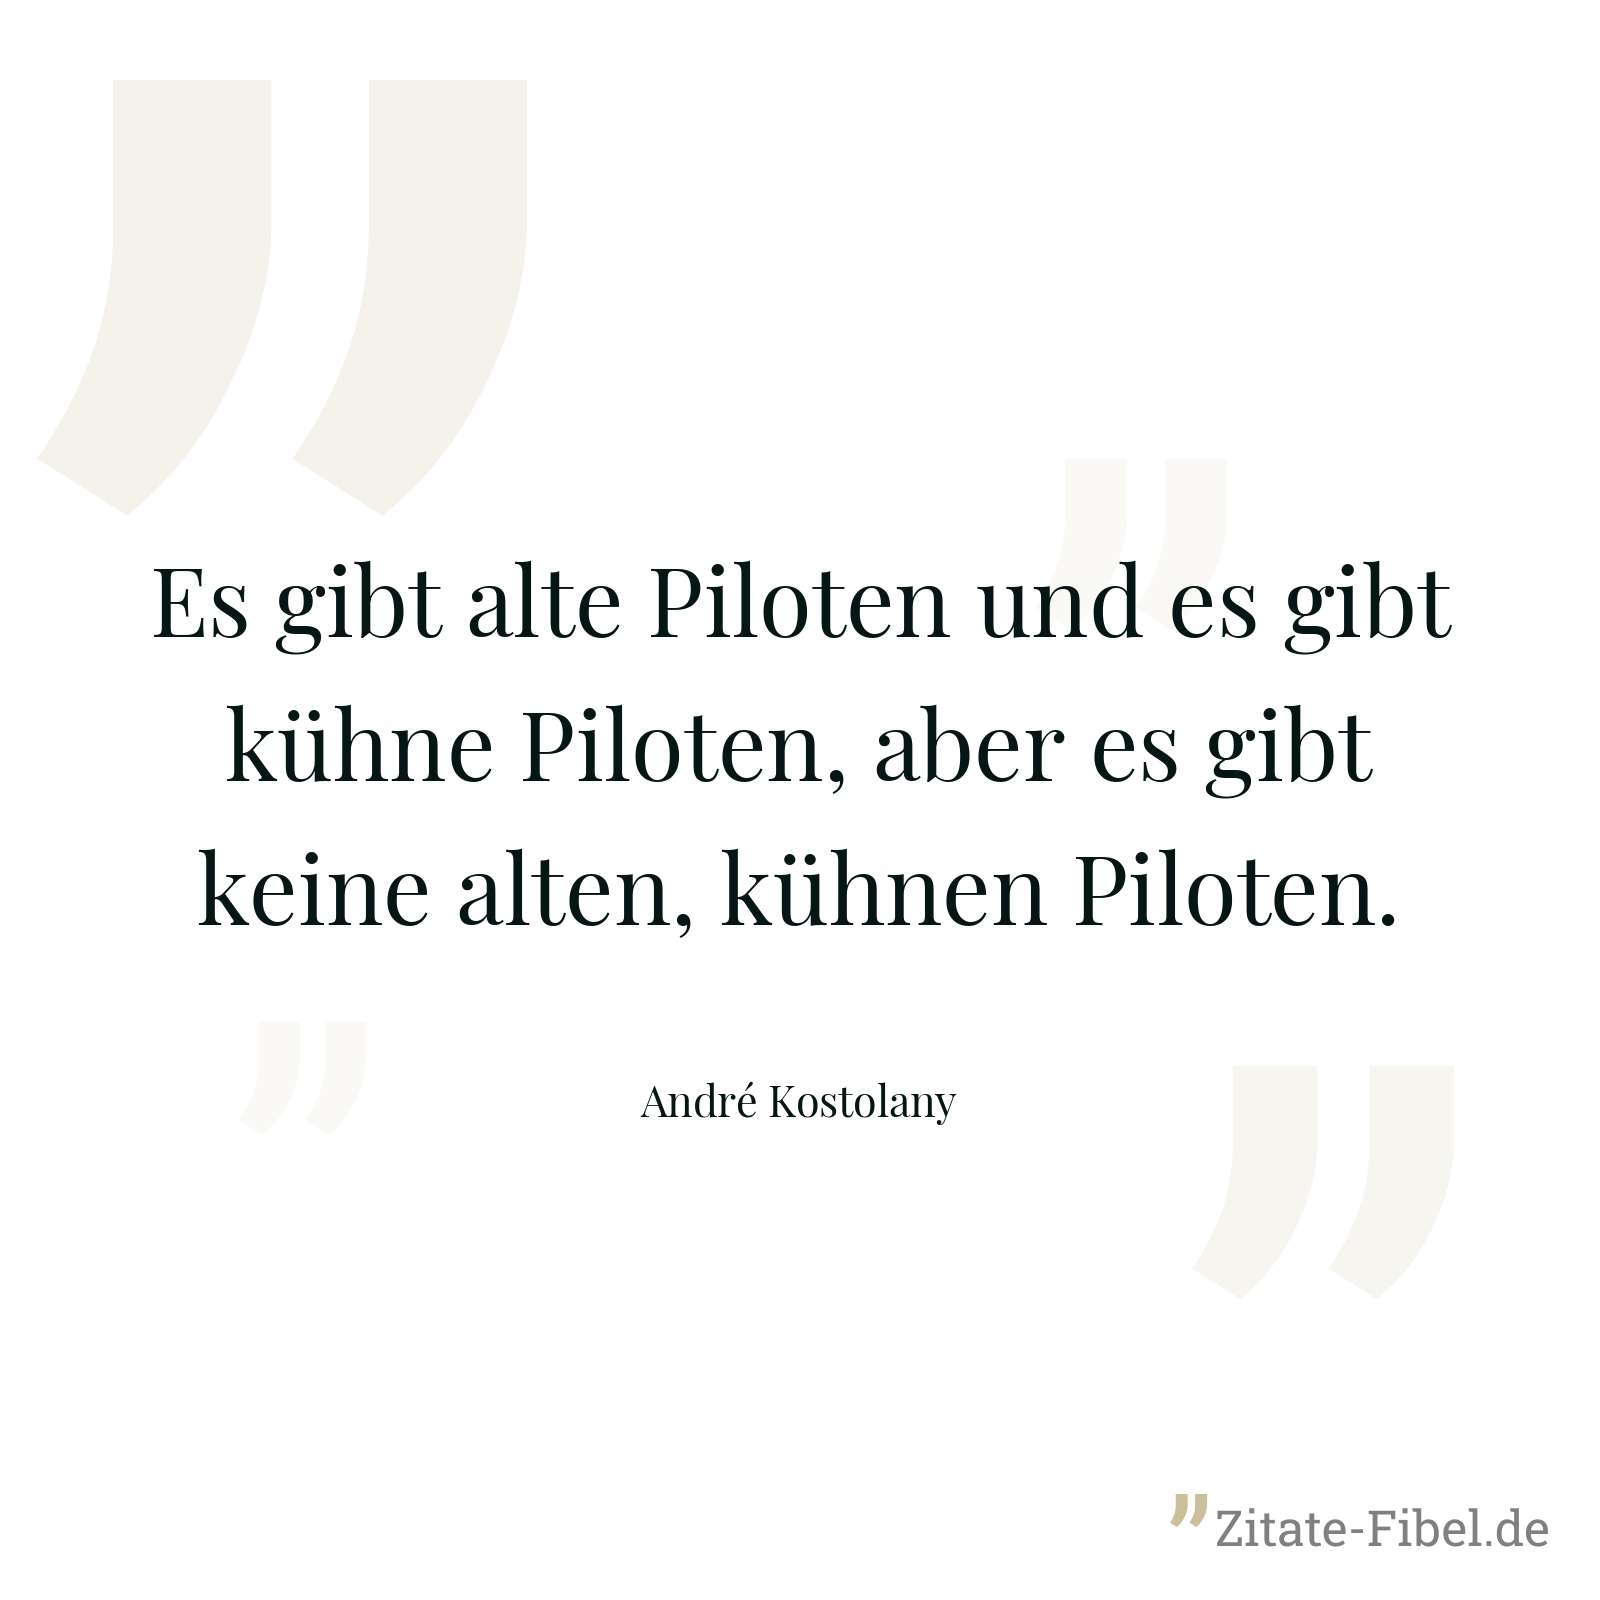 Es gibt alte Piloten und es gibt kühne Piloten, aber es gibt keine alten, kühnen Piloten. - André Kostolany